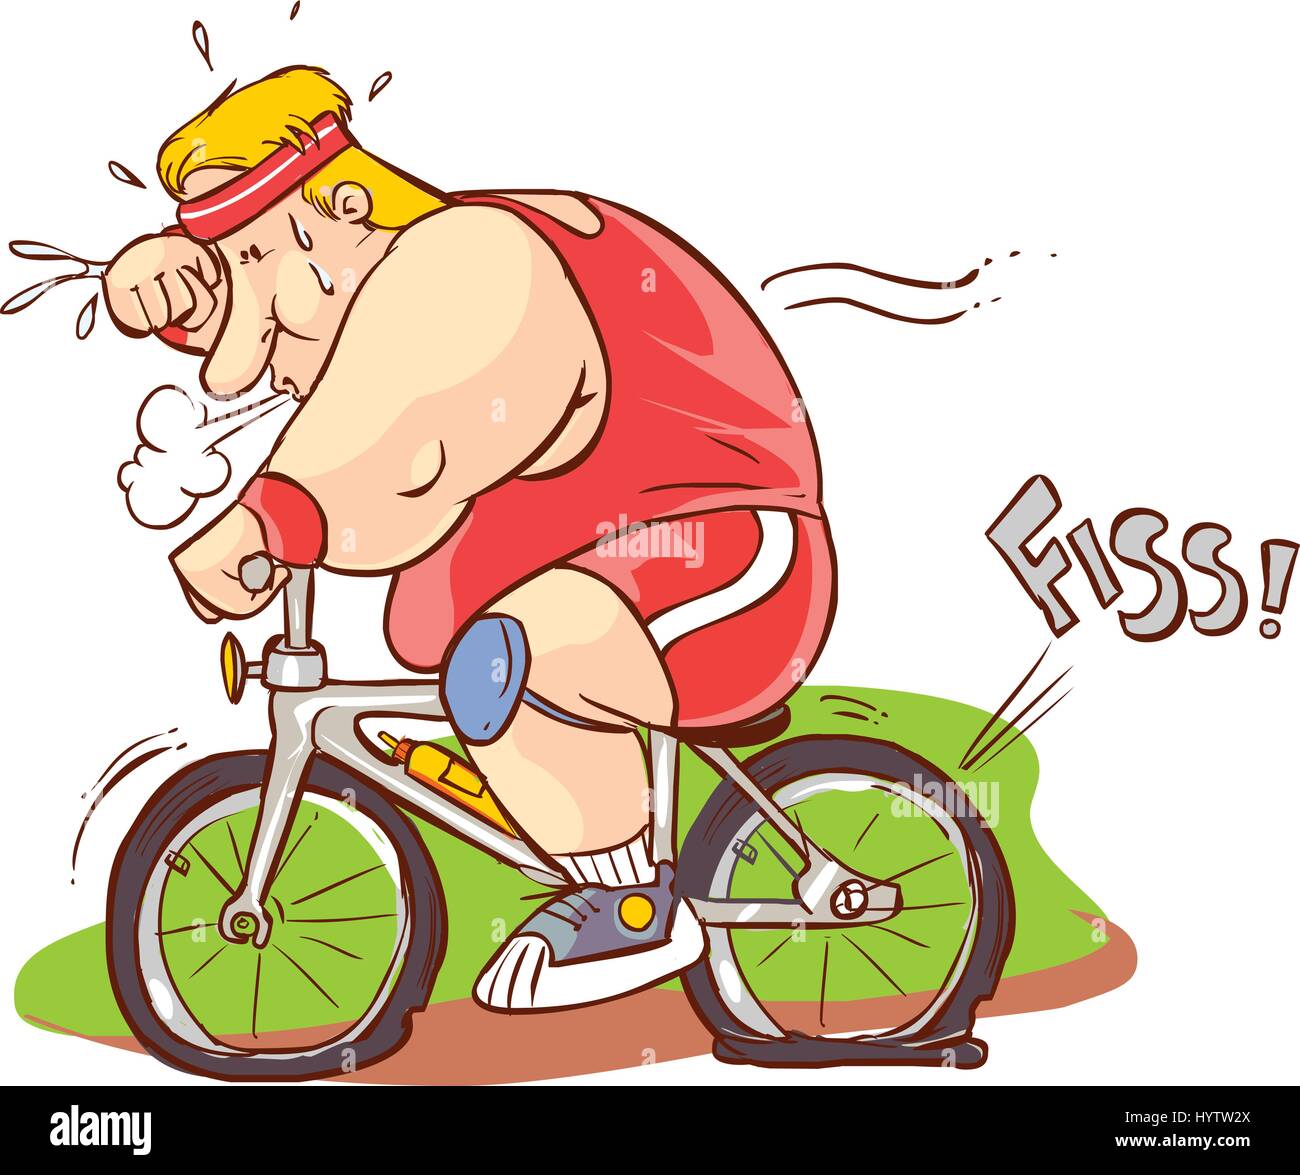 Illustrazione vettoriale di uomo grasso in sella ad una bicicletta Immagine  e Vettoriale - Alamy